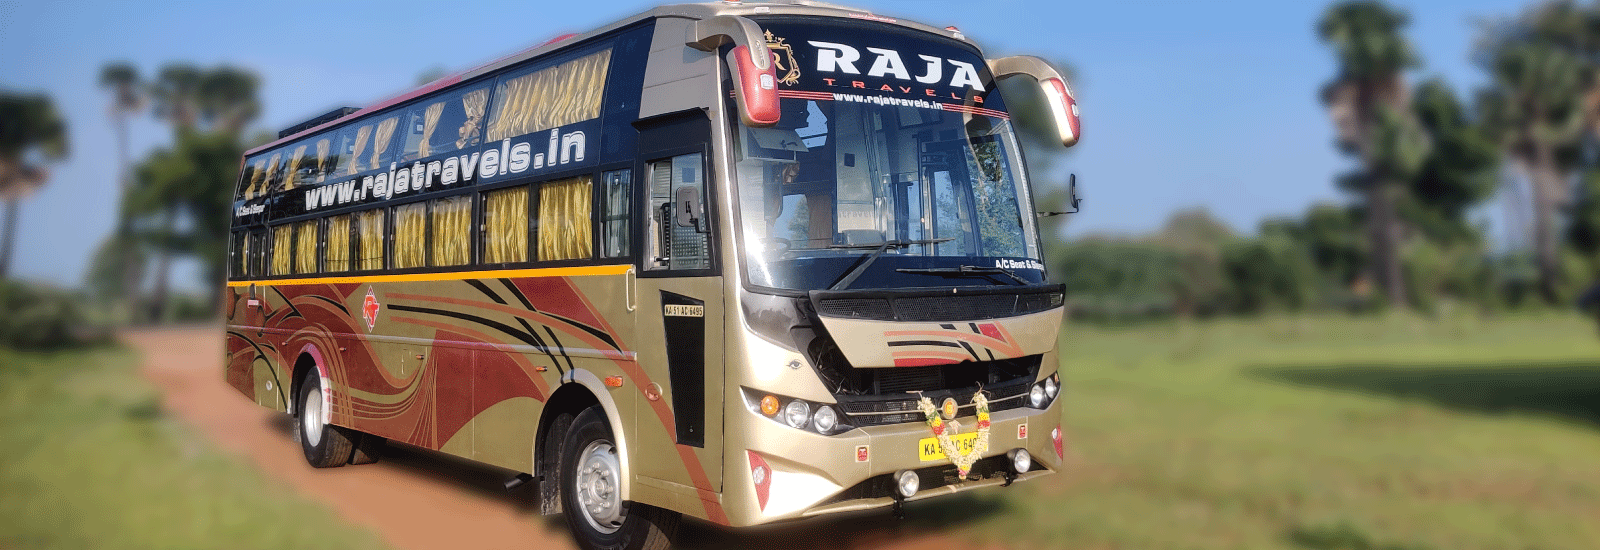 raja tour & travel